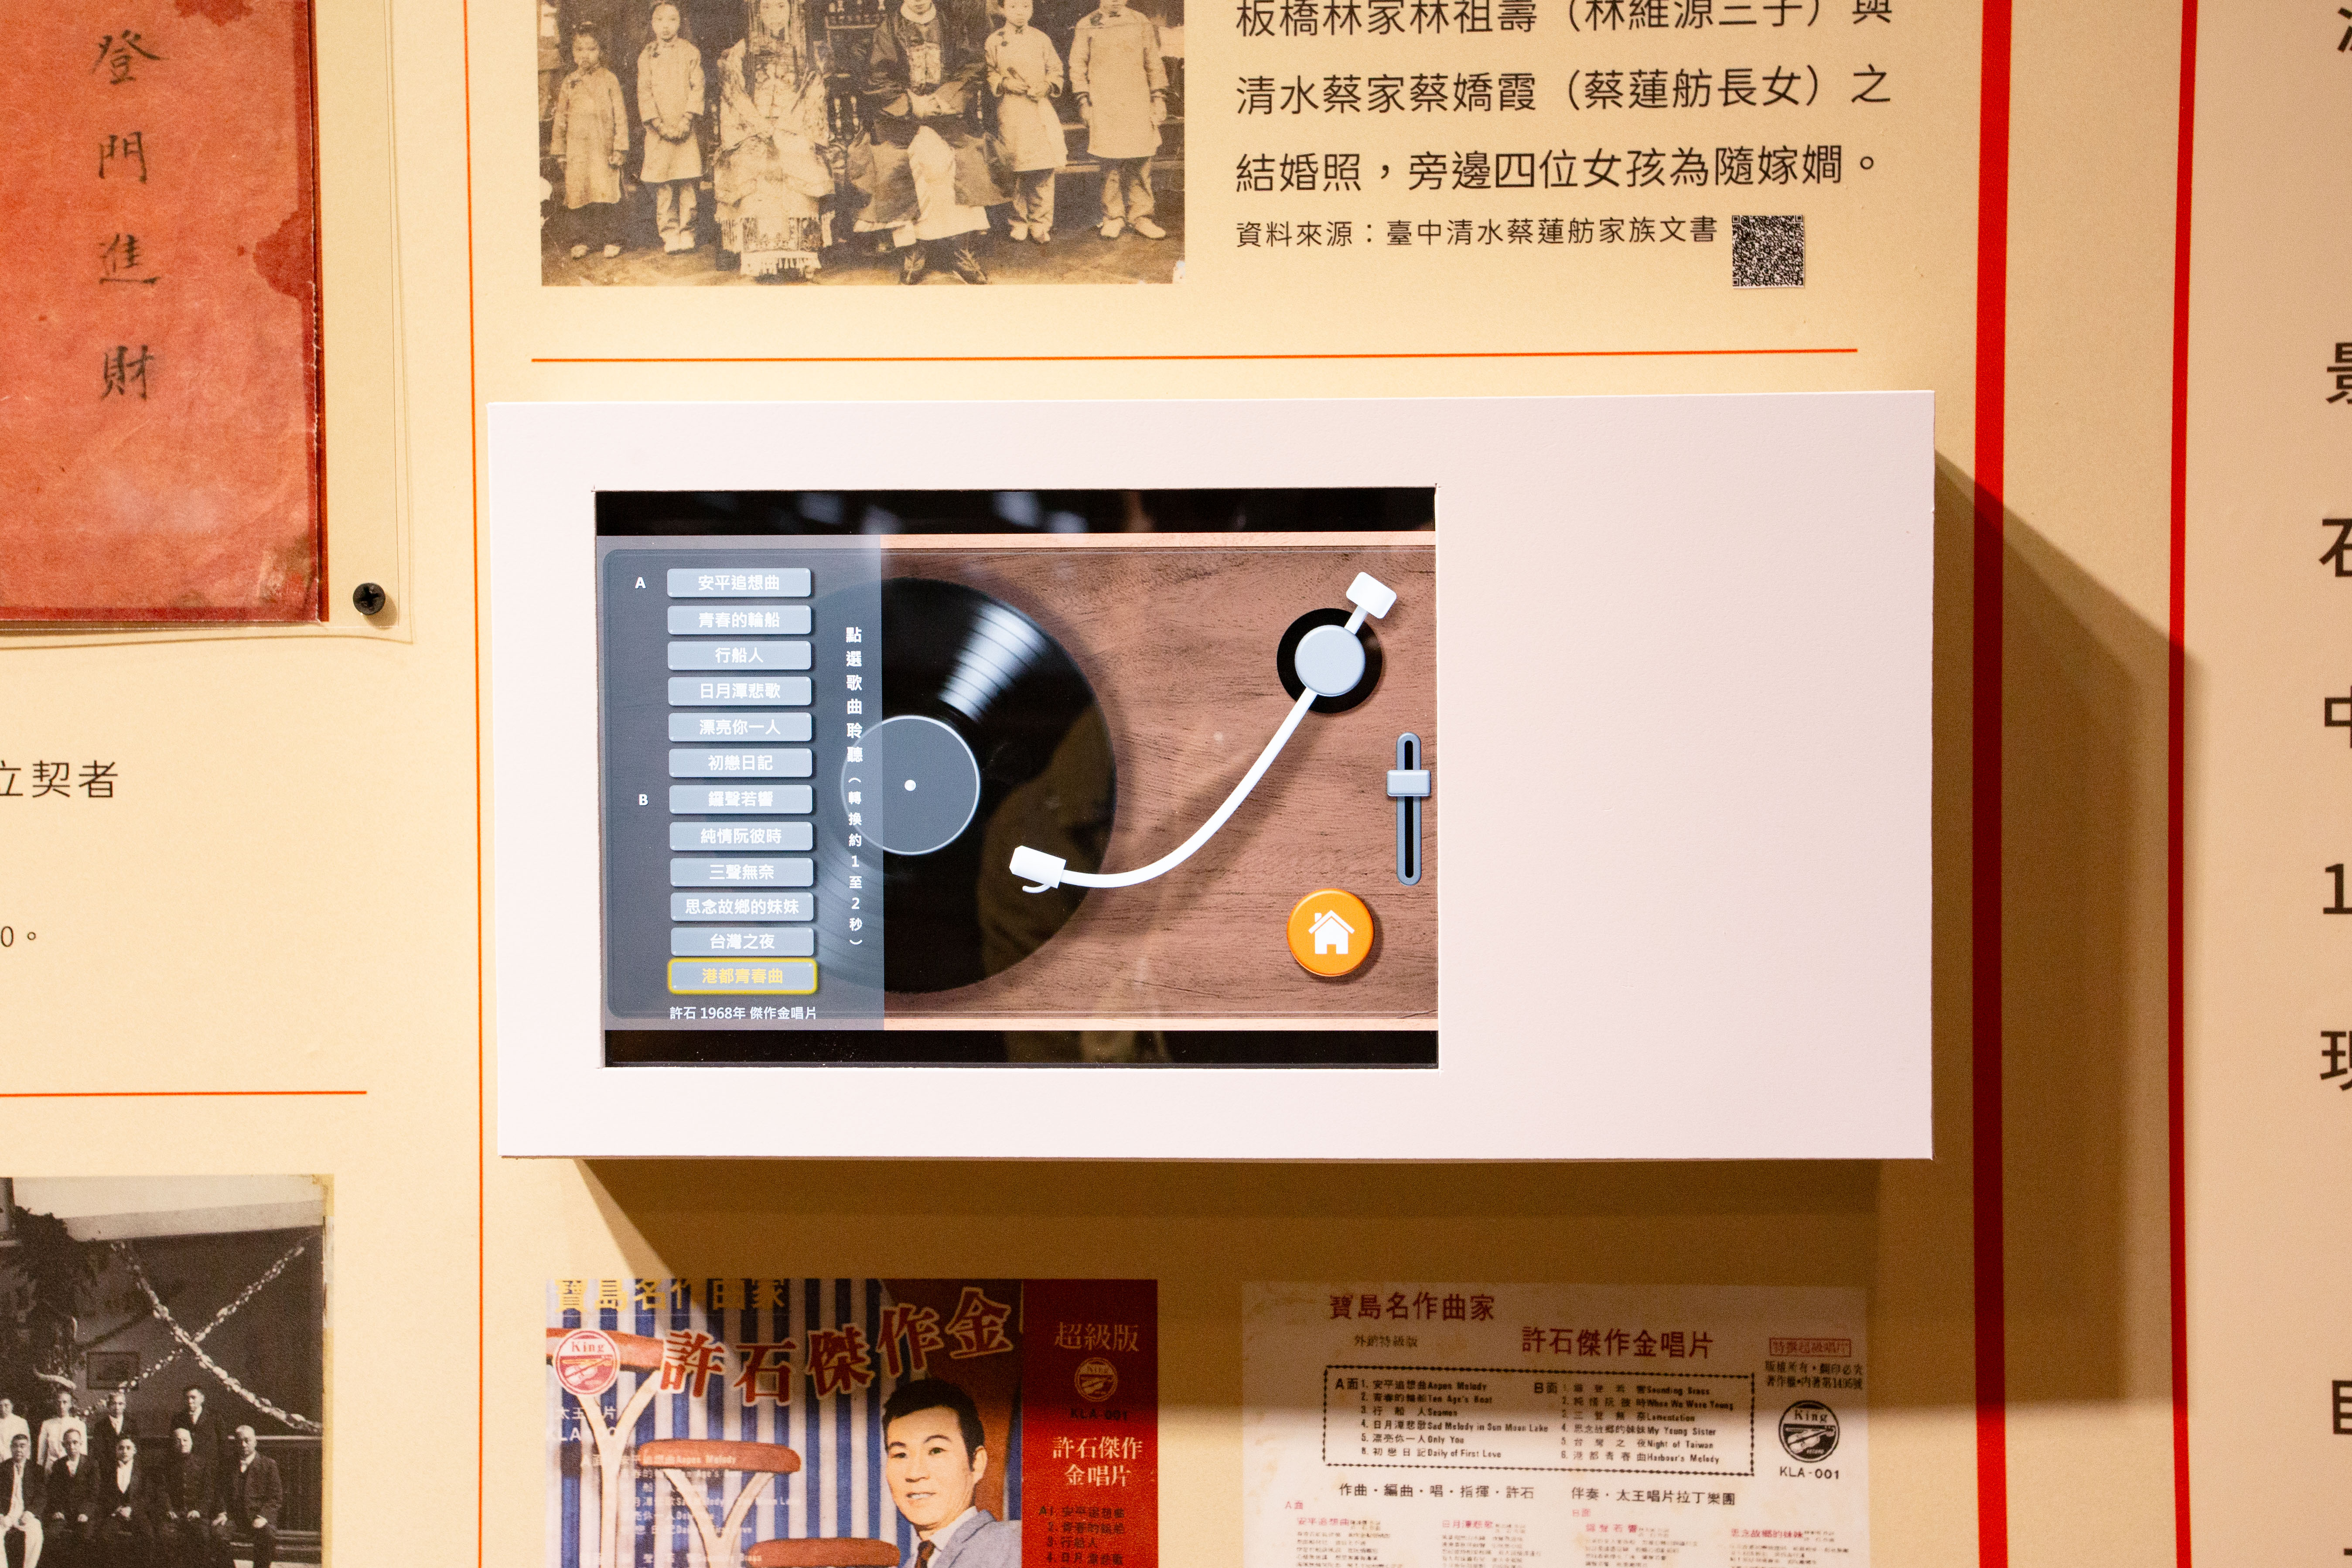 展場除了可閱覽豐富文獻，還可點播黑膠臺語老歌。歌曲出自許石 1968 年發行的「傑作金唱片」